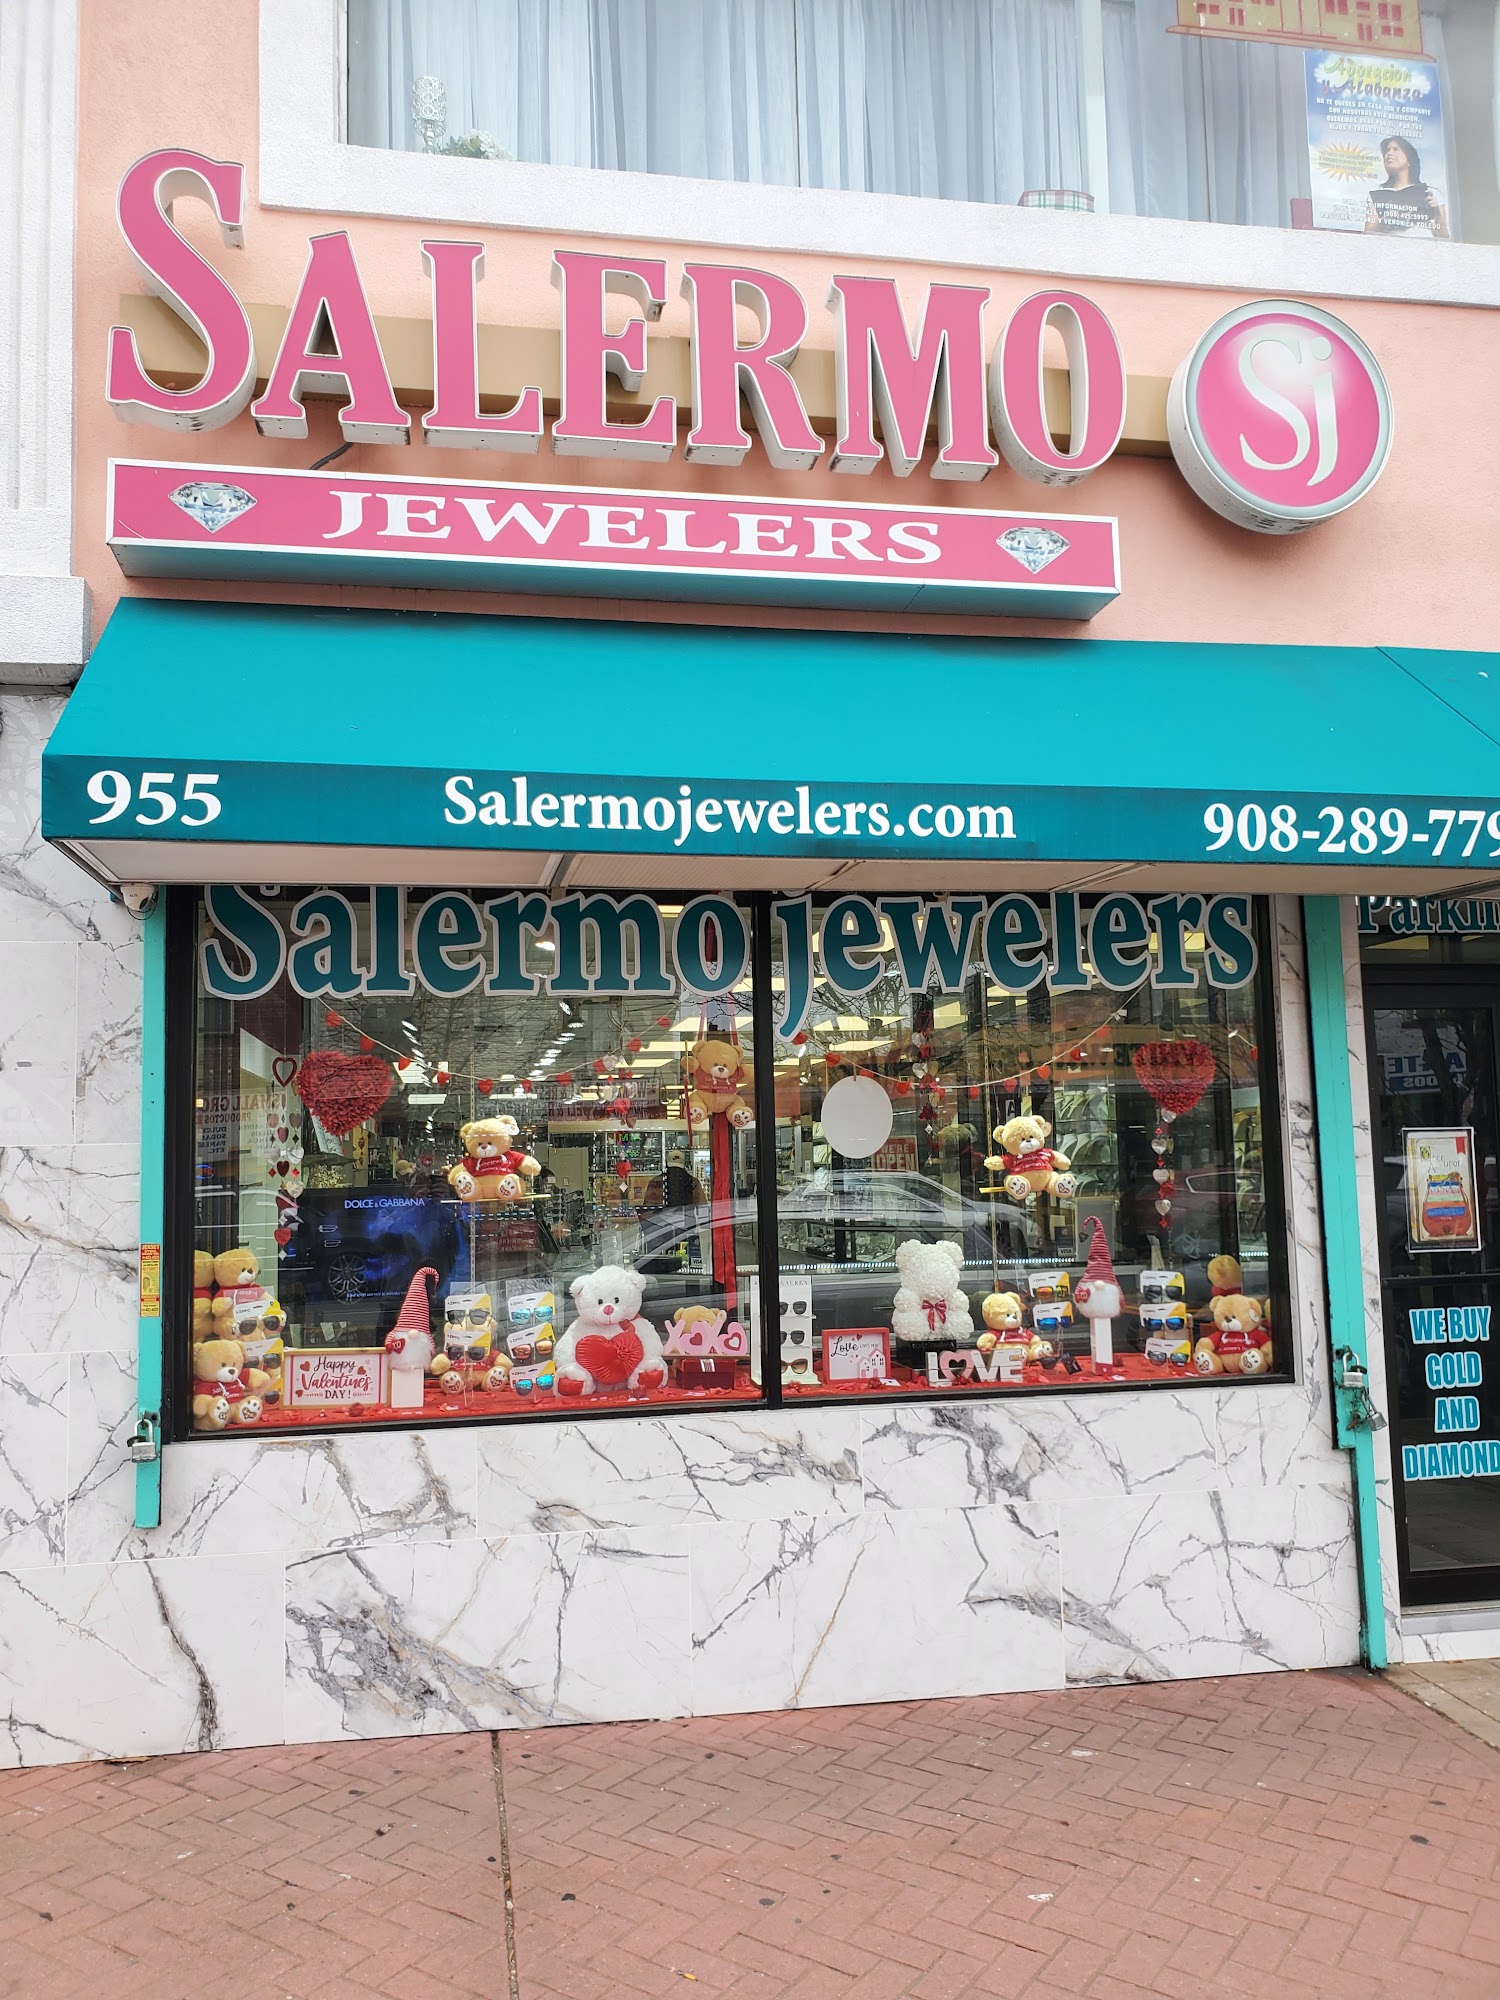 Salermo Jewelers